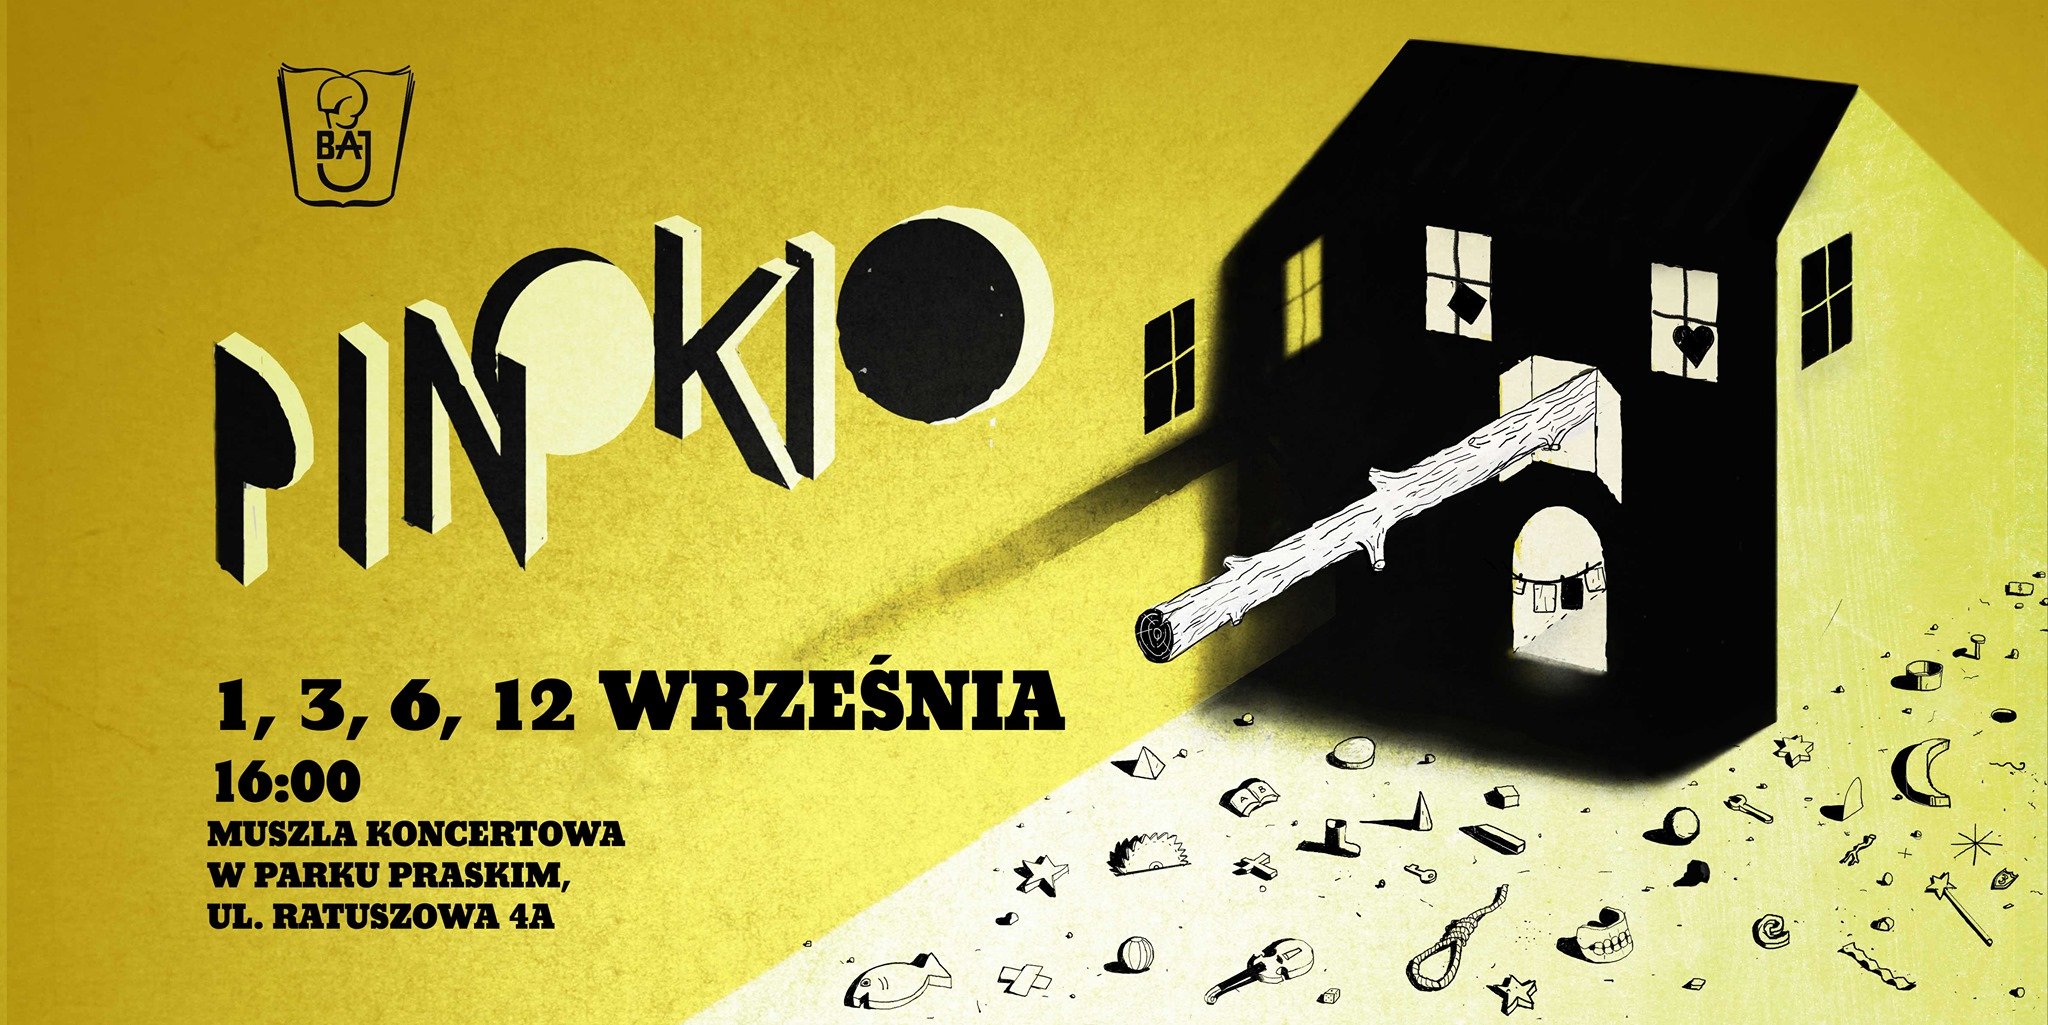 Teatr Baj: Pinokio - spektakl plenerowy